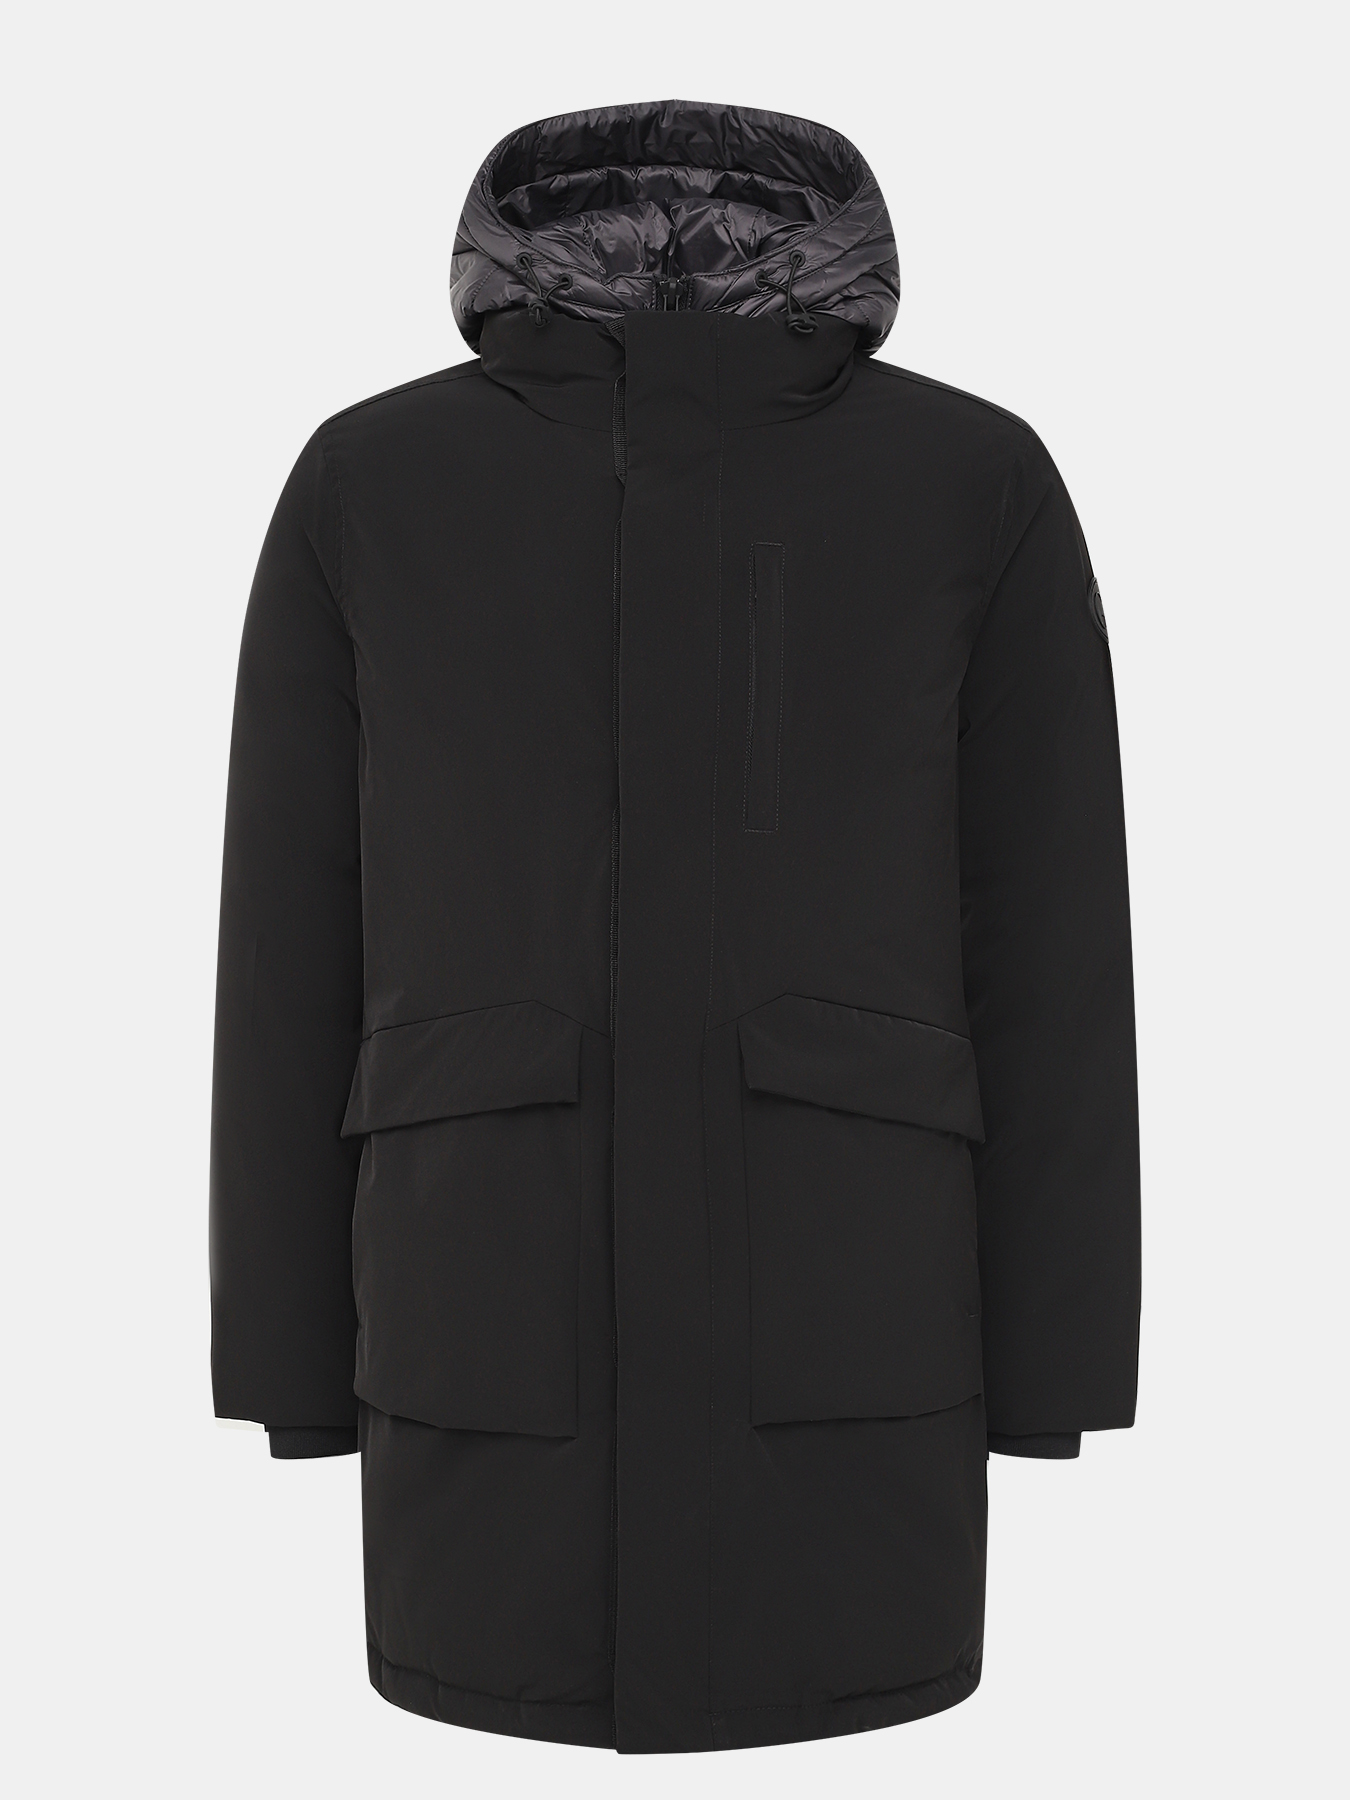 Куртка Gianfranco Ferre 418905-287, цвет черный, размер 56